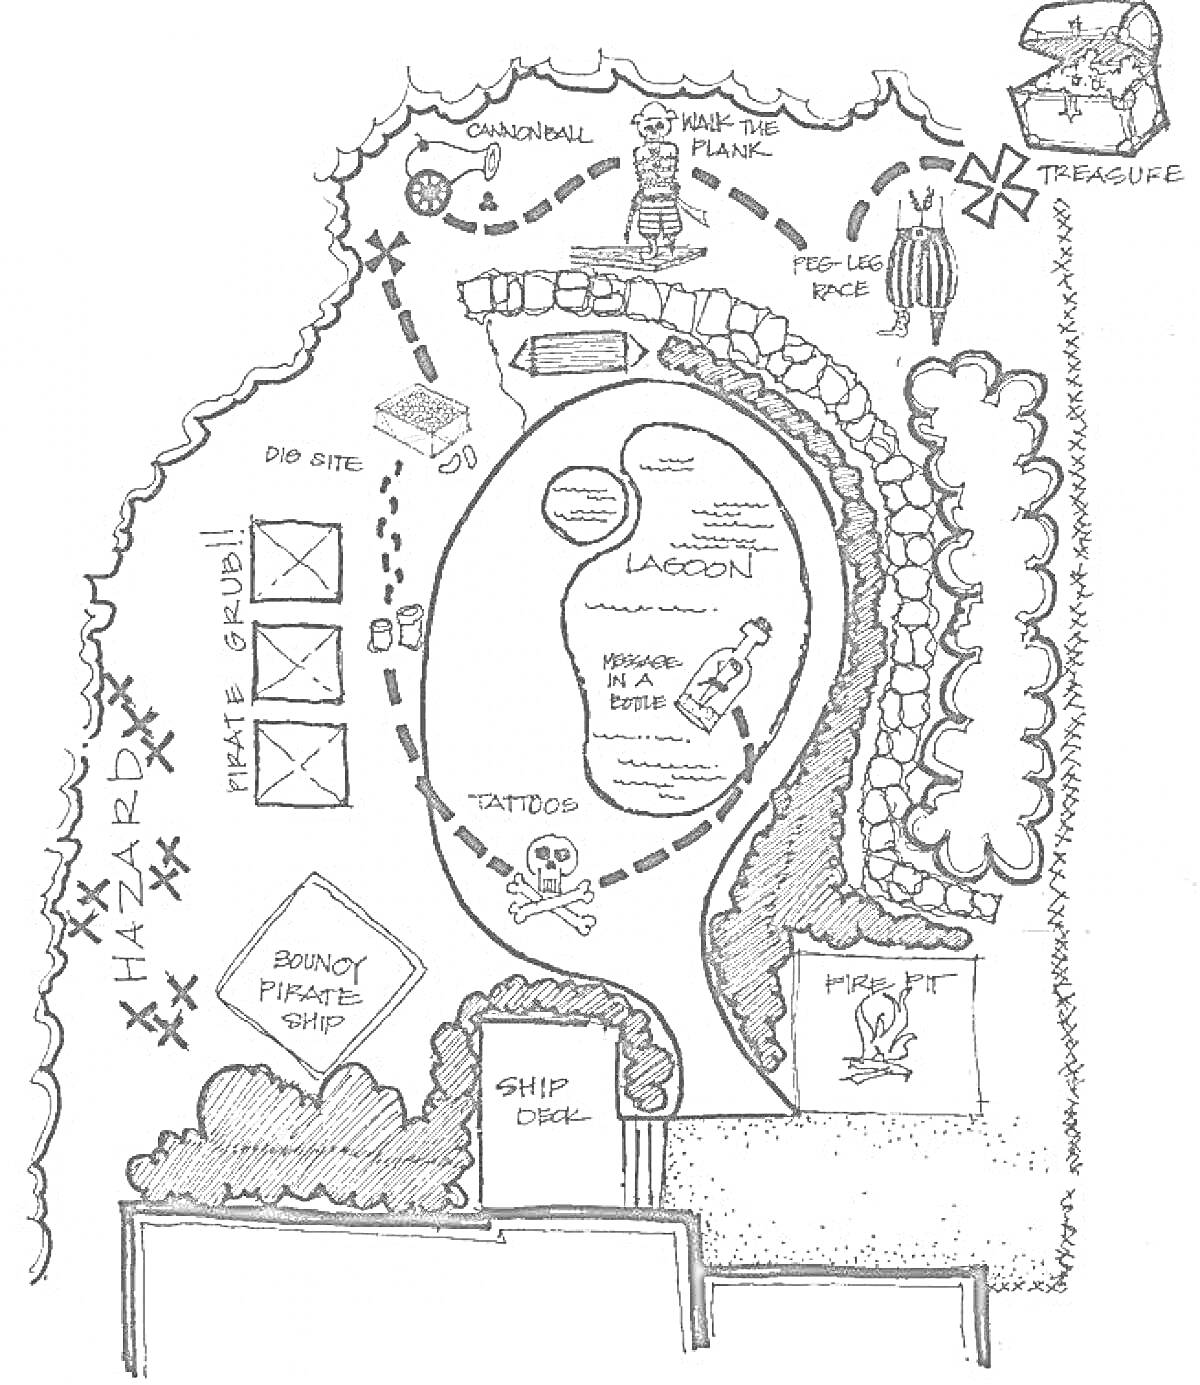 Карта Сокровищ с лагуной, утонувшим кораблем, опасной зоной, каналом, скелетом и сундуком с сокровищами